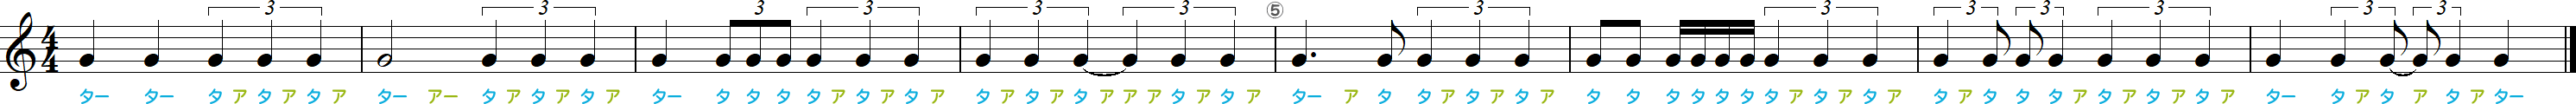 2拍3連符のリズム練習8小節